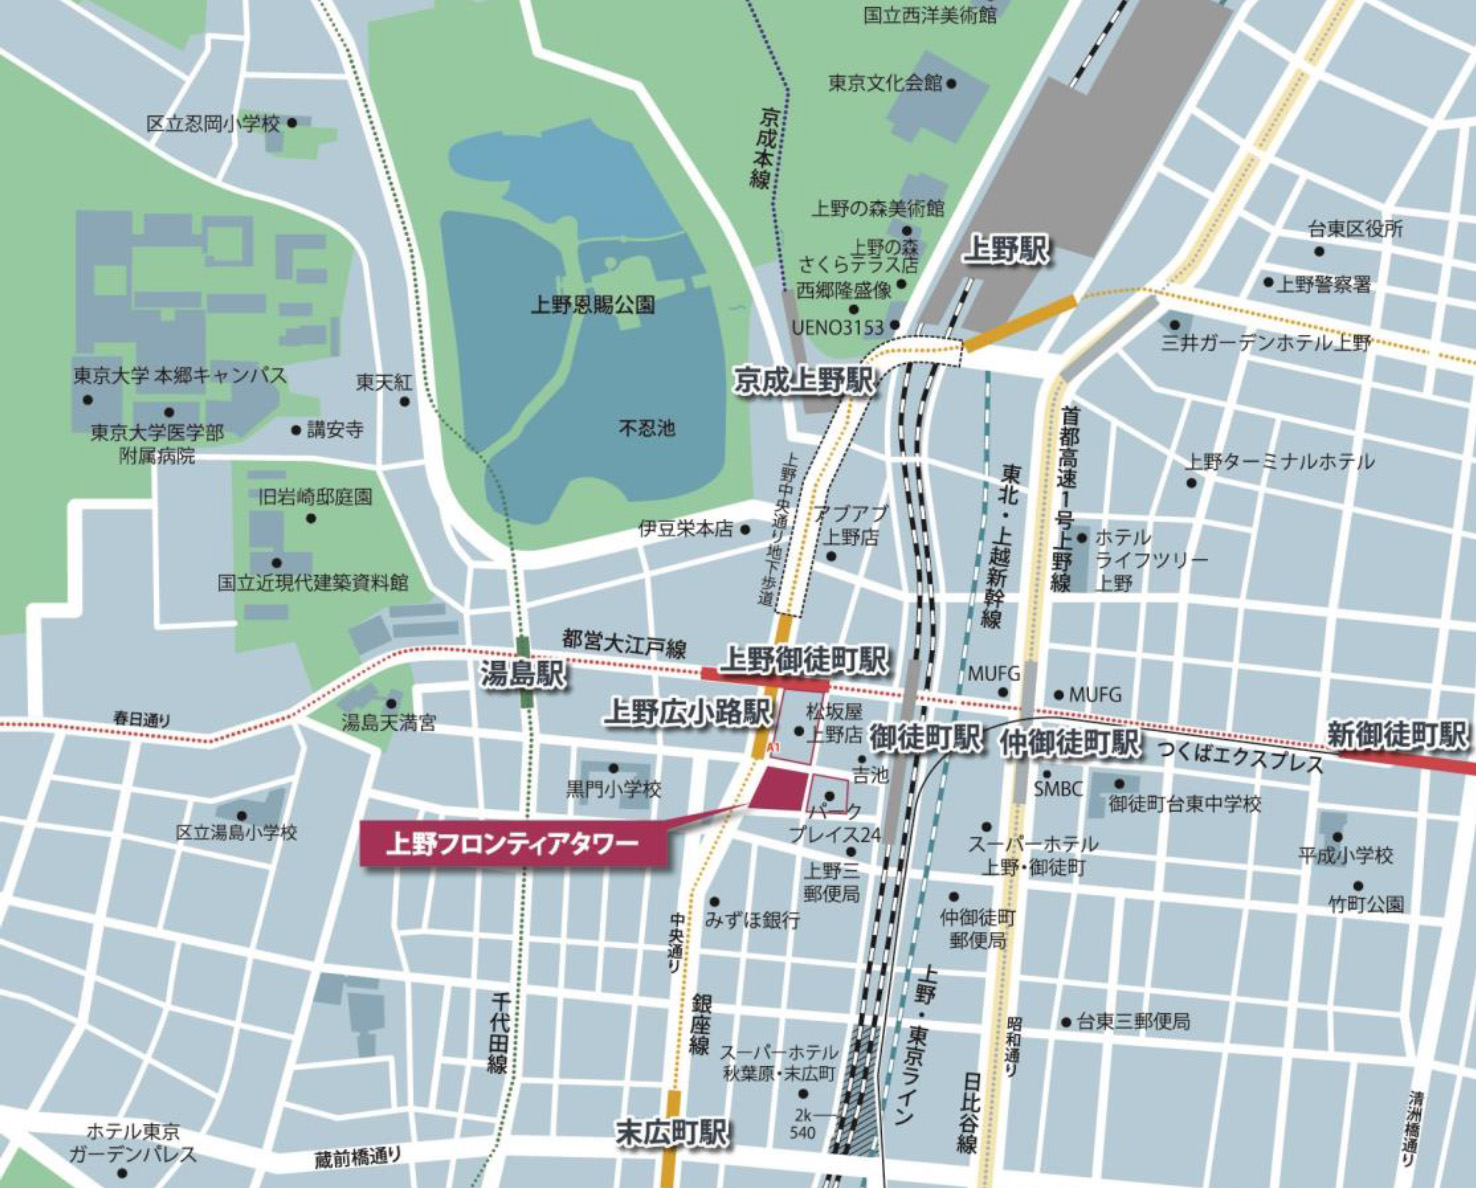 JR、東京メトロ、都営地下鉄のいろいろな駅からアクセスがいい場所。秋葉原からは、中央通りをまっすぐ行って右側